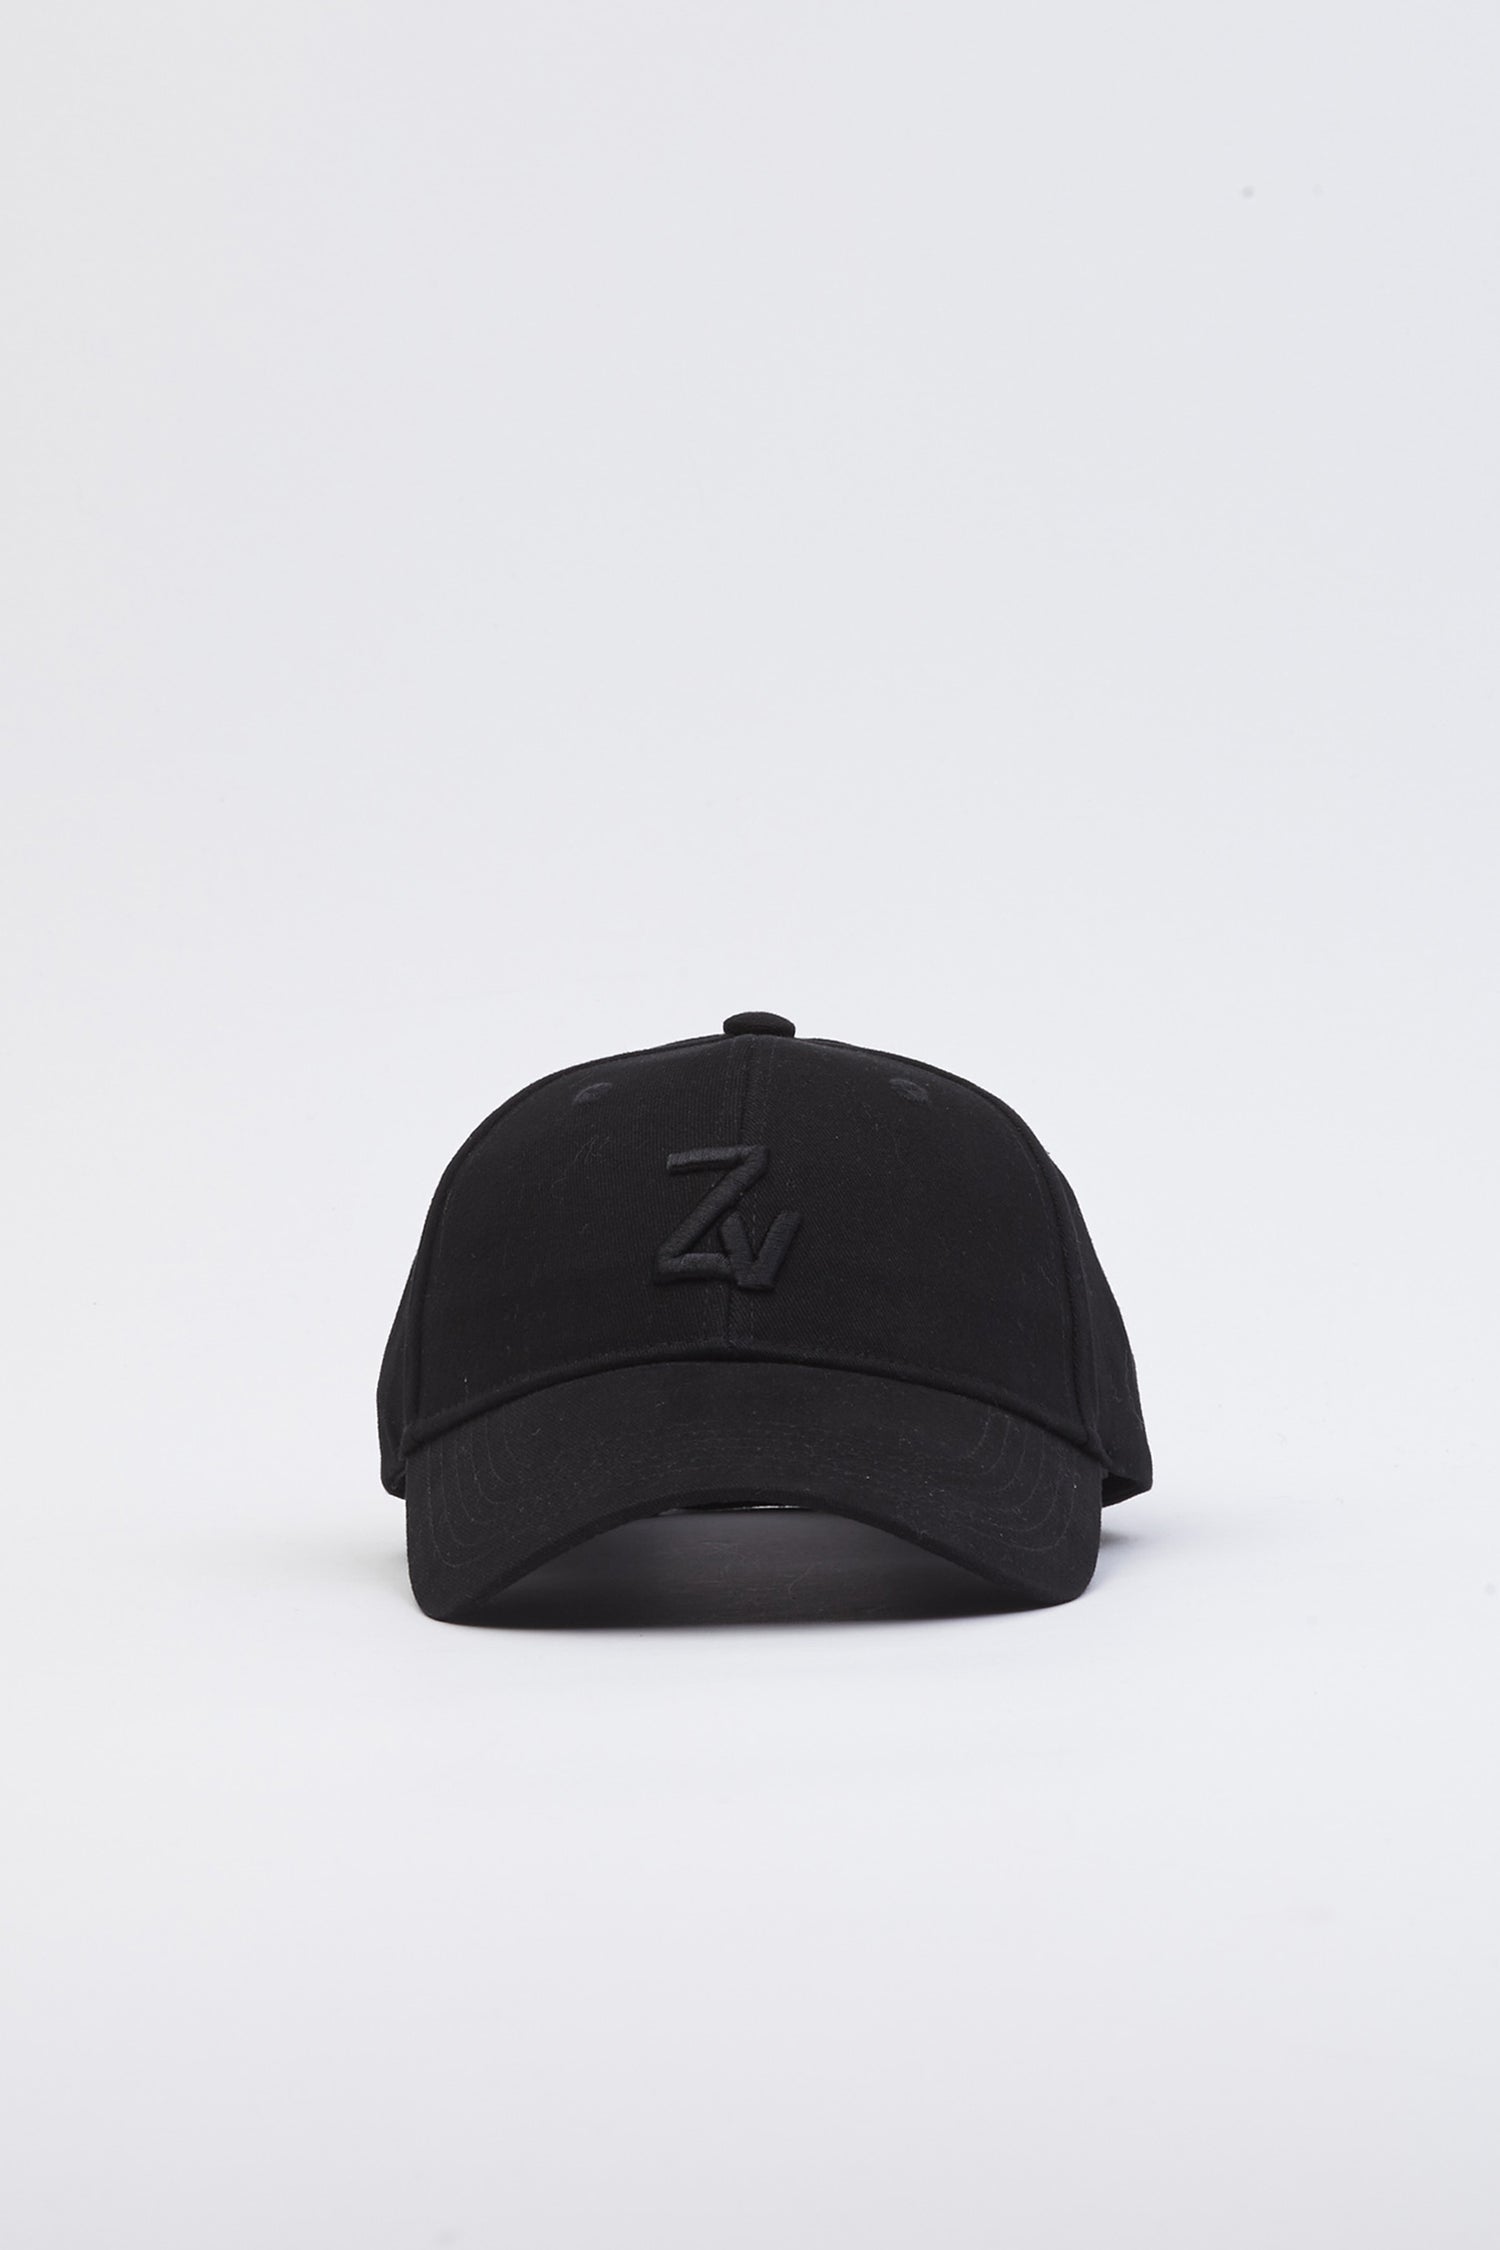 Klelia ZV initiale cap, black